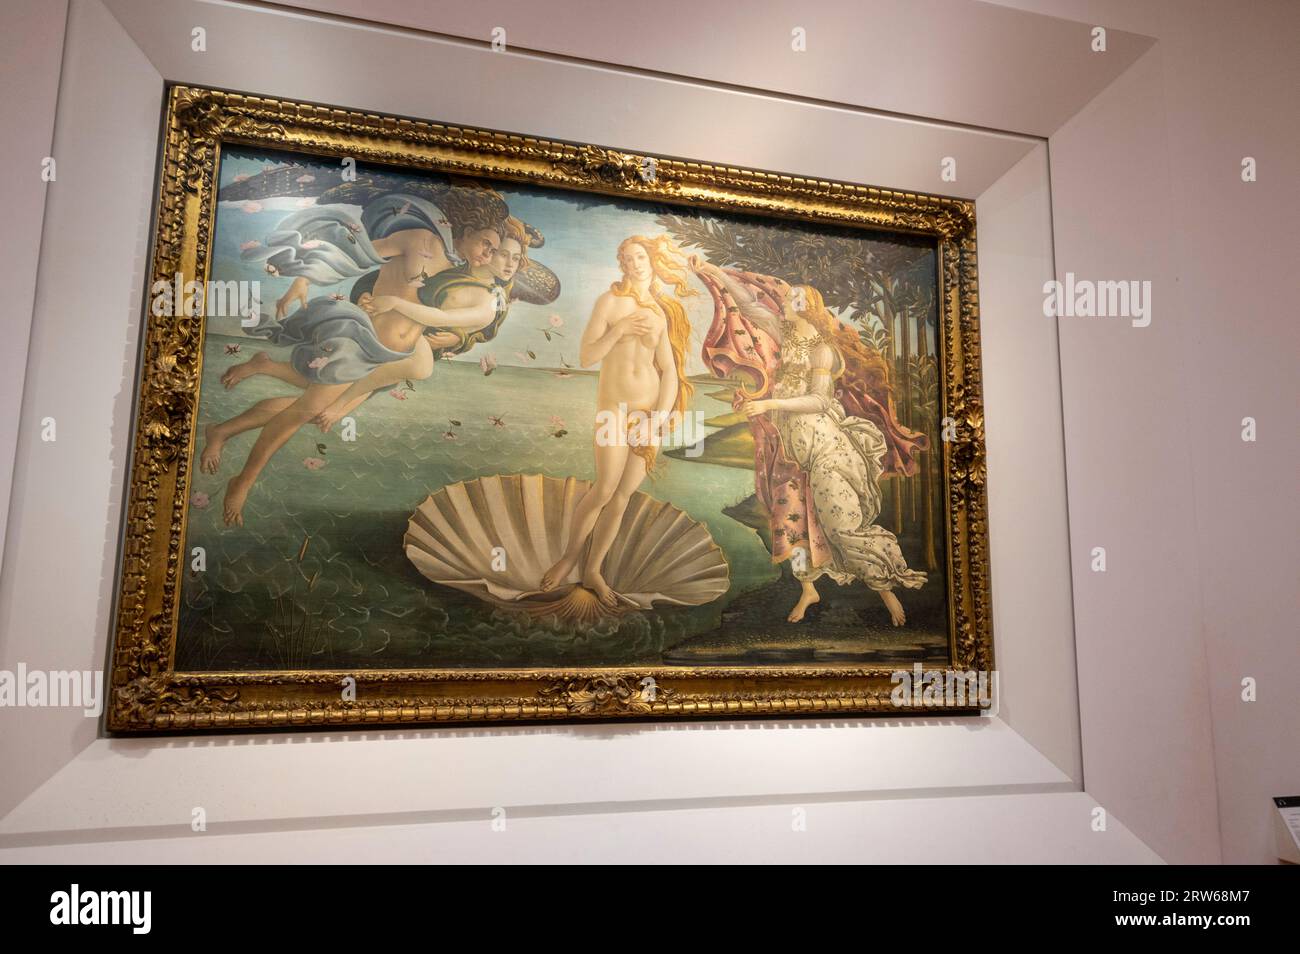 L'une des attractions artistiques les plus importantes de la galerie d'art des Offices est la naissance de Vénus, montrant la déesse, Vénus, debout sur une coquille Saint-Jacques géante. Le Banque D'Images